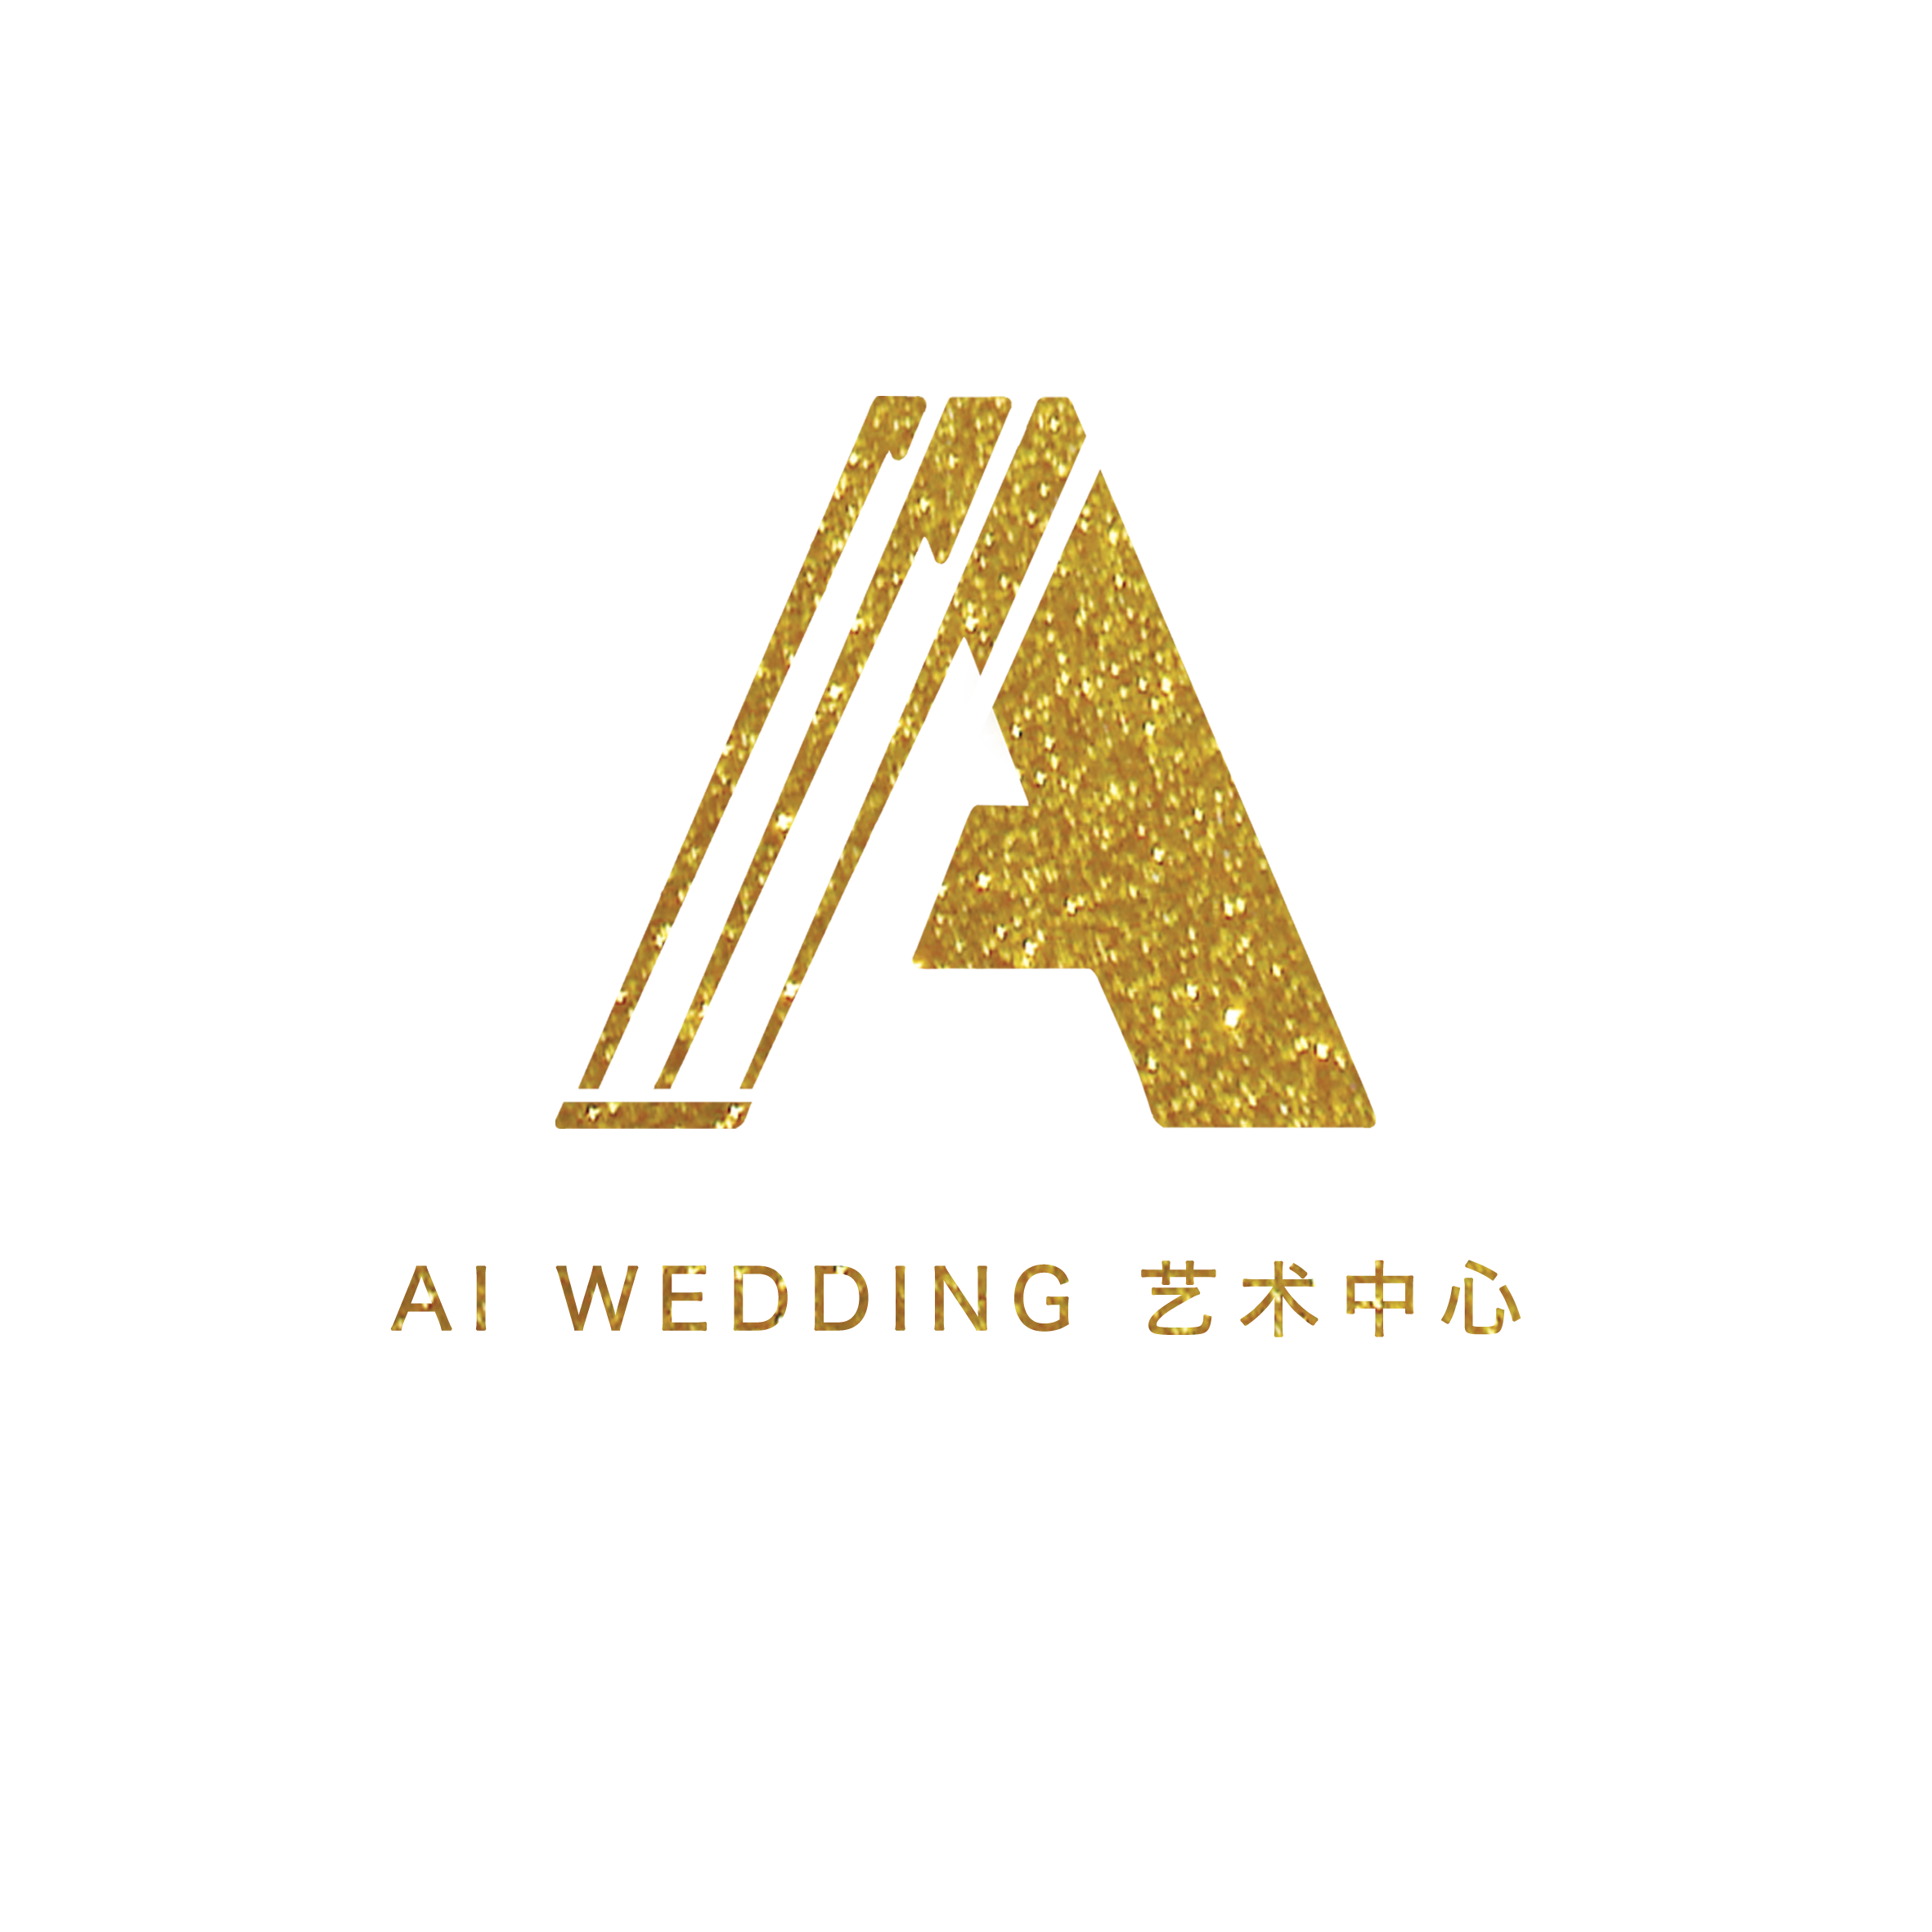 AI婚礼(天津店)